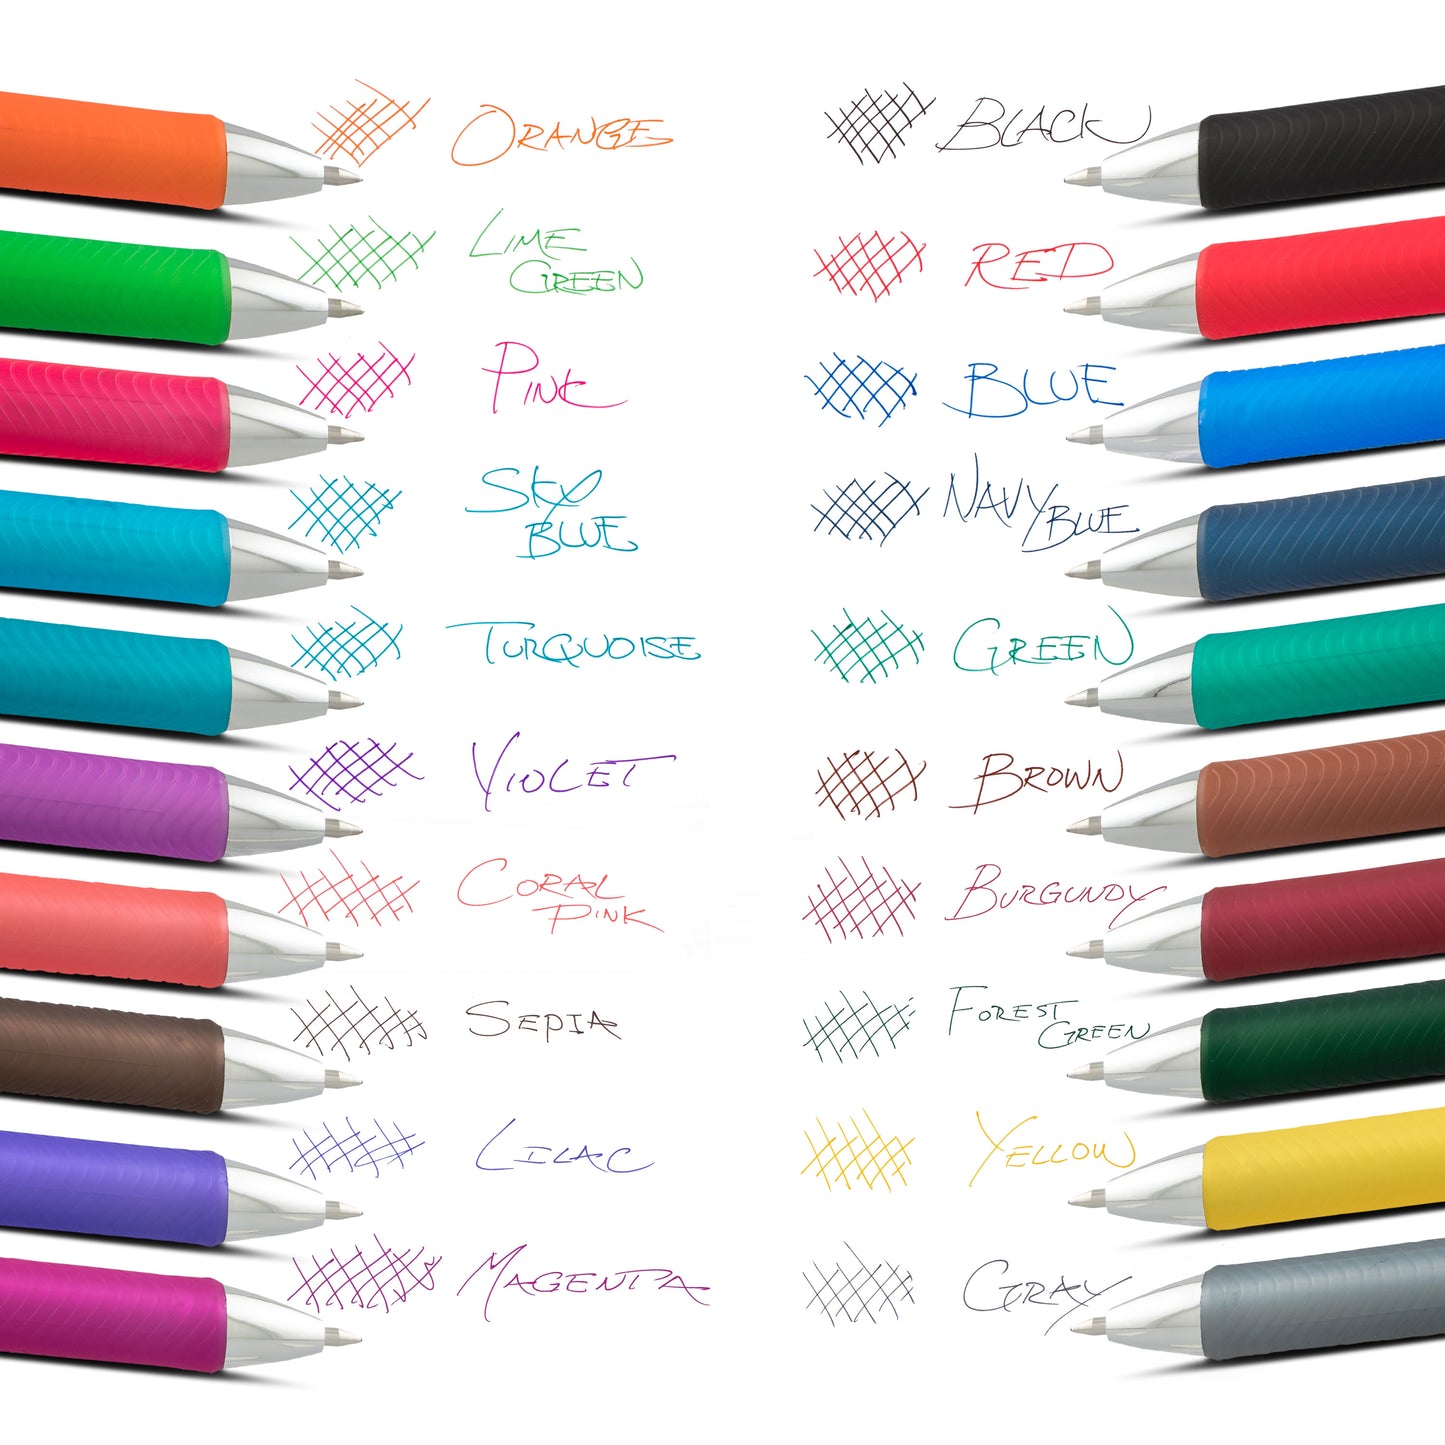 EnerGel RTX Liquid Gel Pens - Show Your True Colors 20-pk